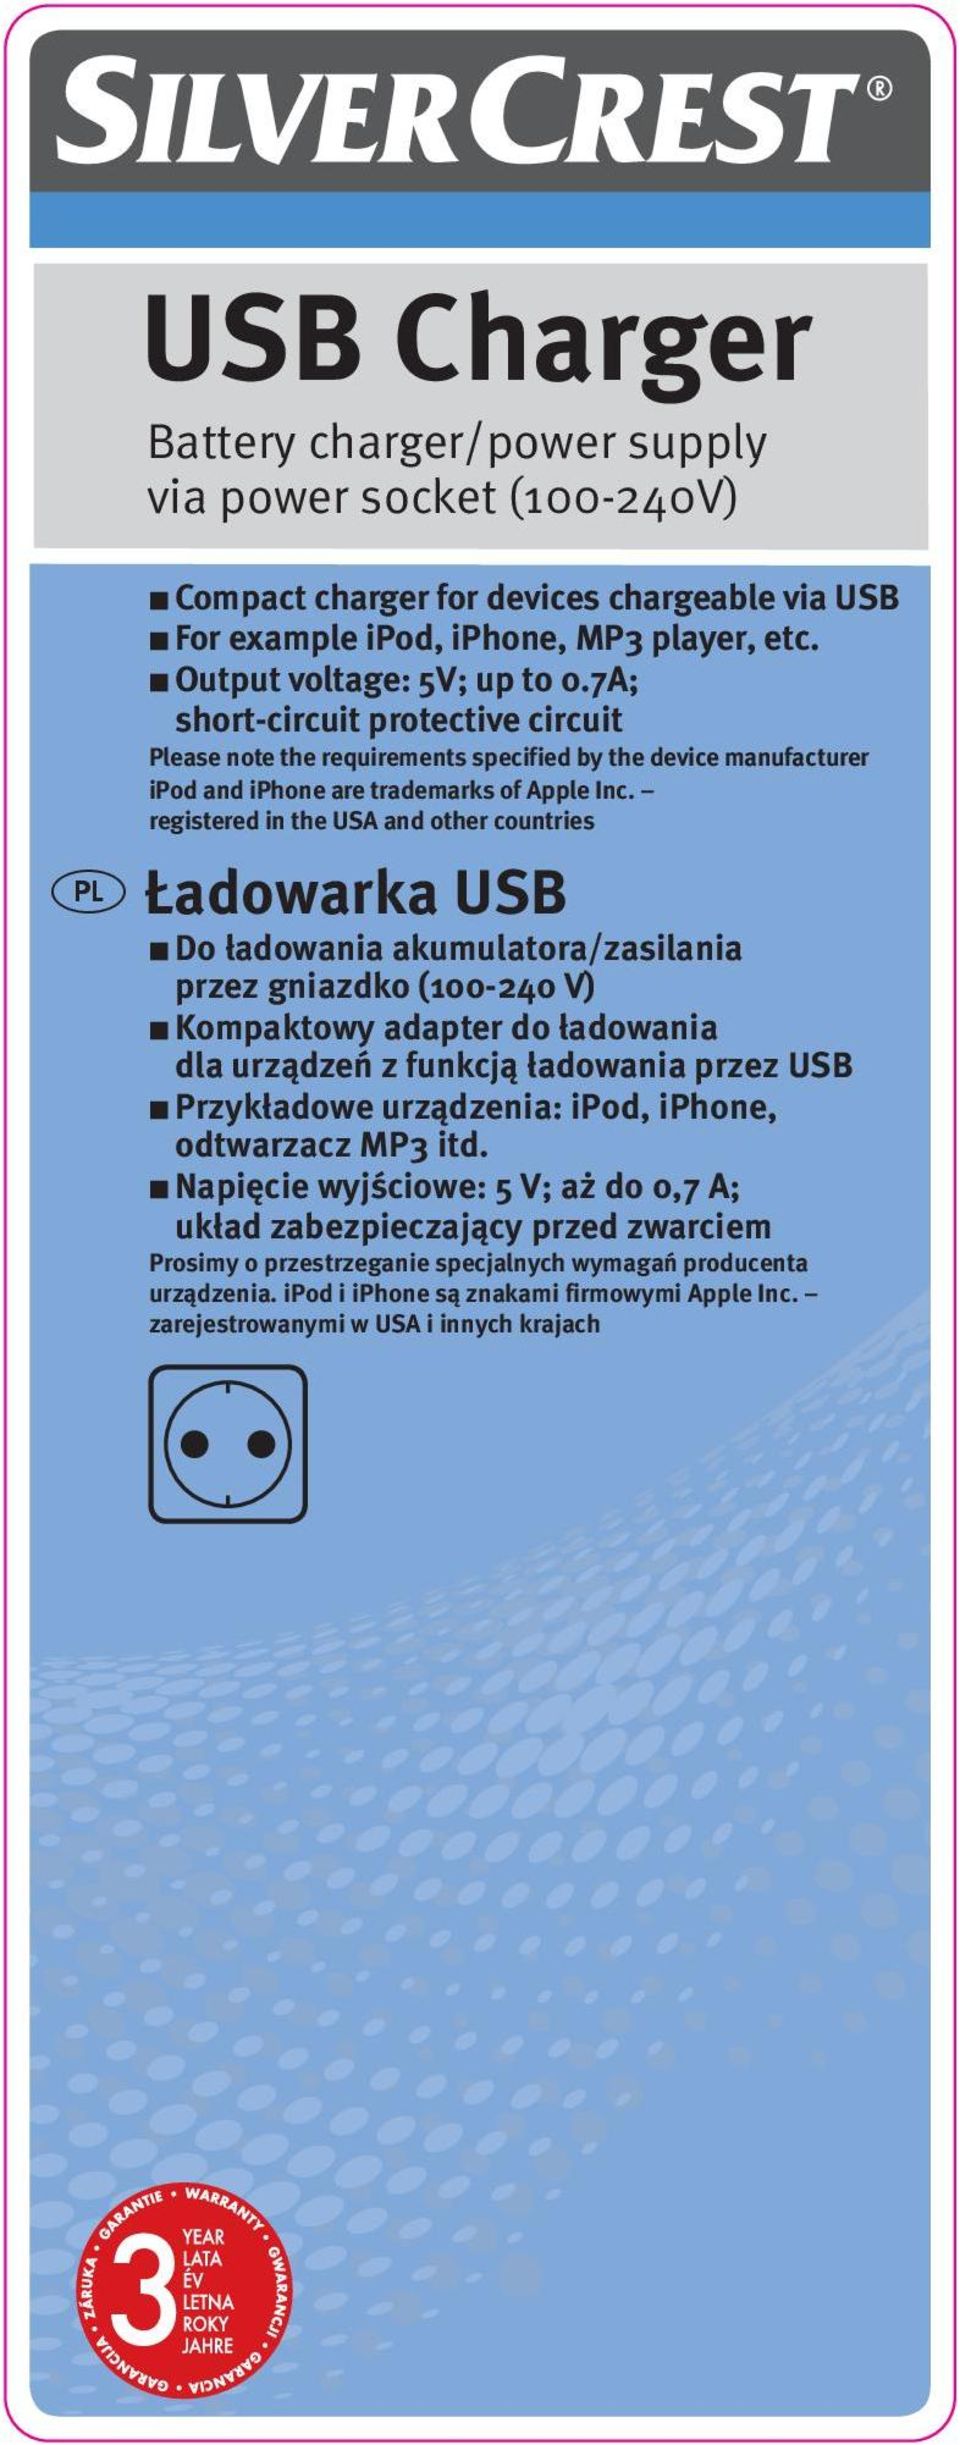 registered in the USA and other countries t Ładowarka USB Do ładowania akumulatora/zasilania przez gniazdko (100-240 V) Kompaktowy adapter do ładowania dla urządzeń z funkcją ładowania przez USB